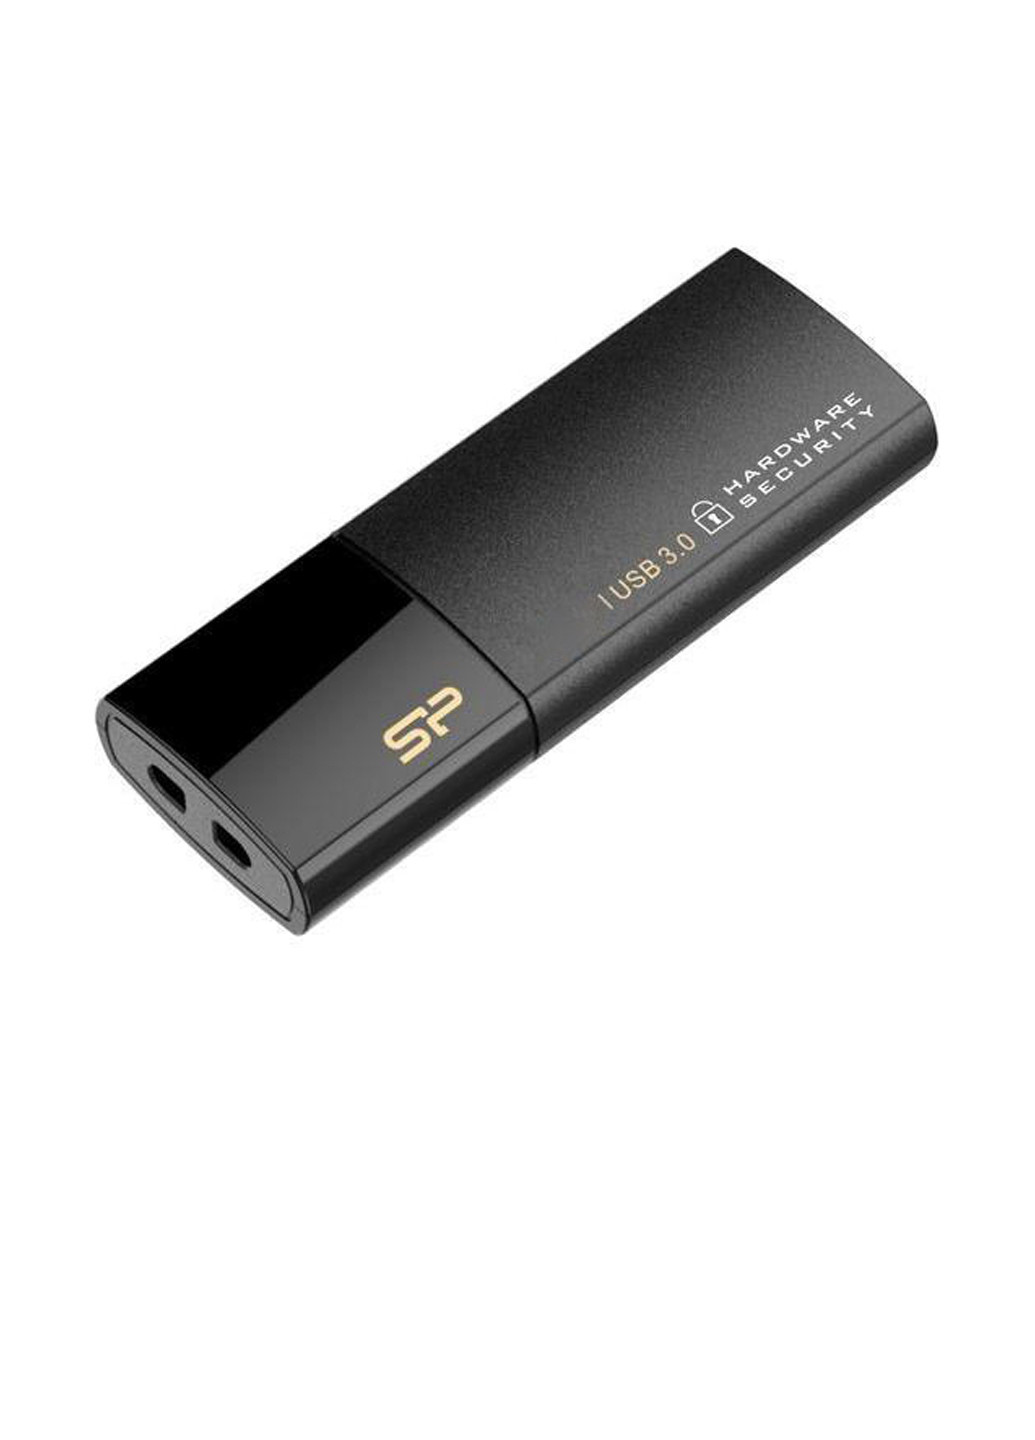 Флеш память USB 64GB Secure G50 USB 3.0 (SP064GBUF3G50V1K) Silicon Power флеш память usb silicon power 64gb secure g50 usb 3.0 (sp064gbuf3g50v1k) (136742719)